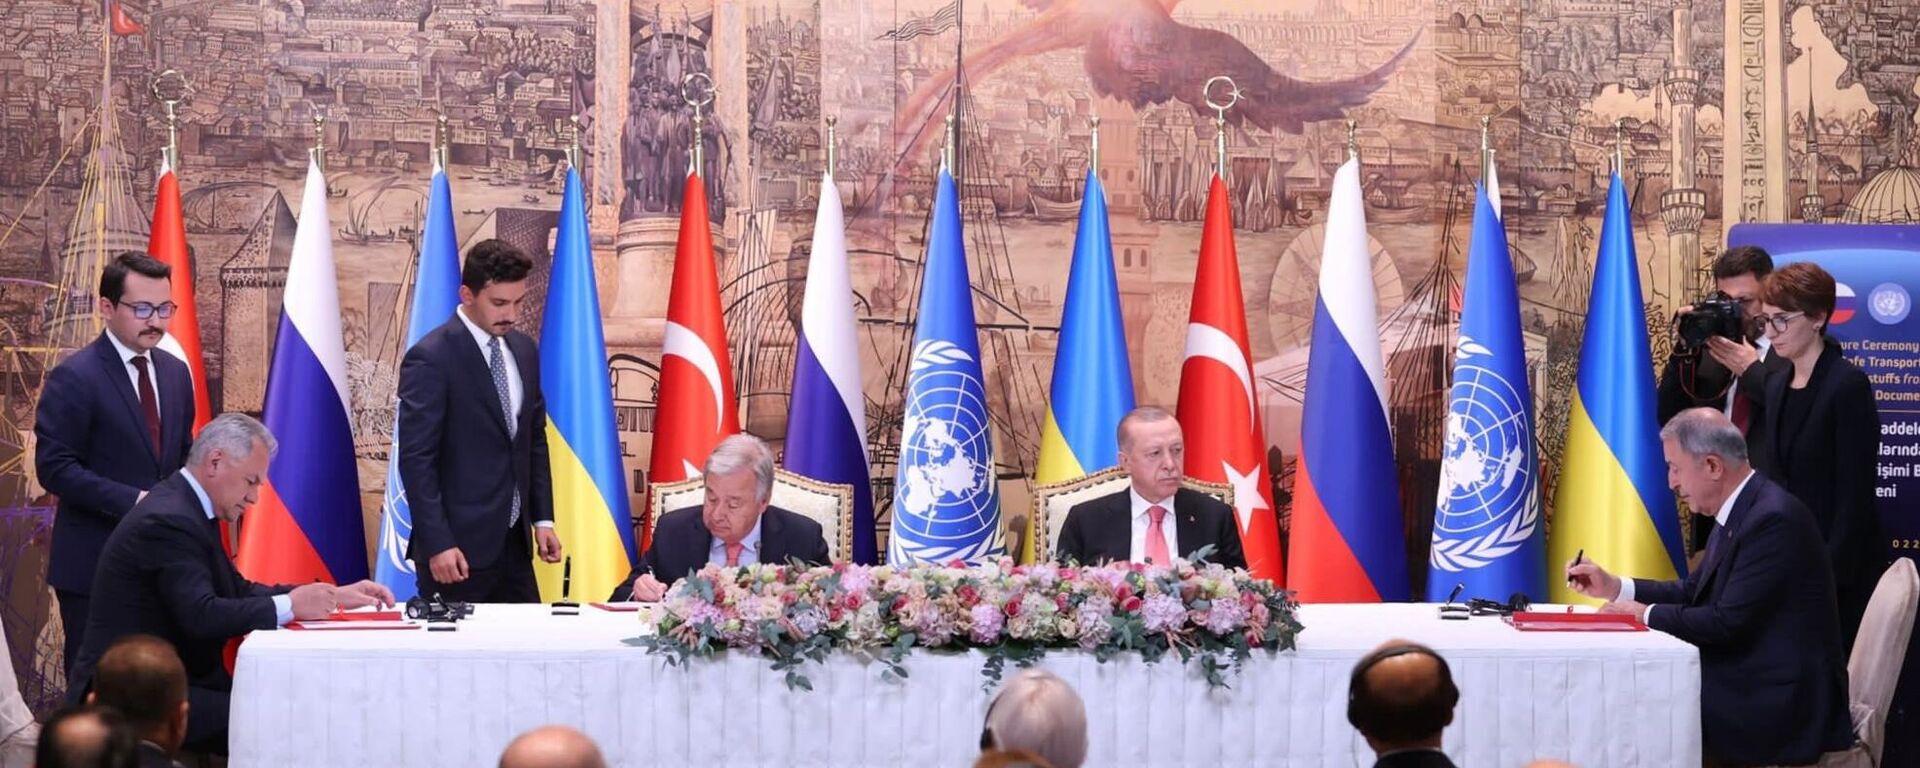 La firma del acuerdo alimentario entre Rusia, Turquía y la ONU en Estambul - Sputnik Mundo, 1920, 22.07.2022